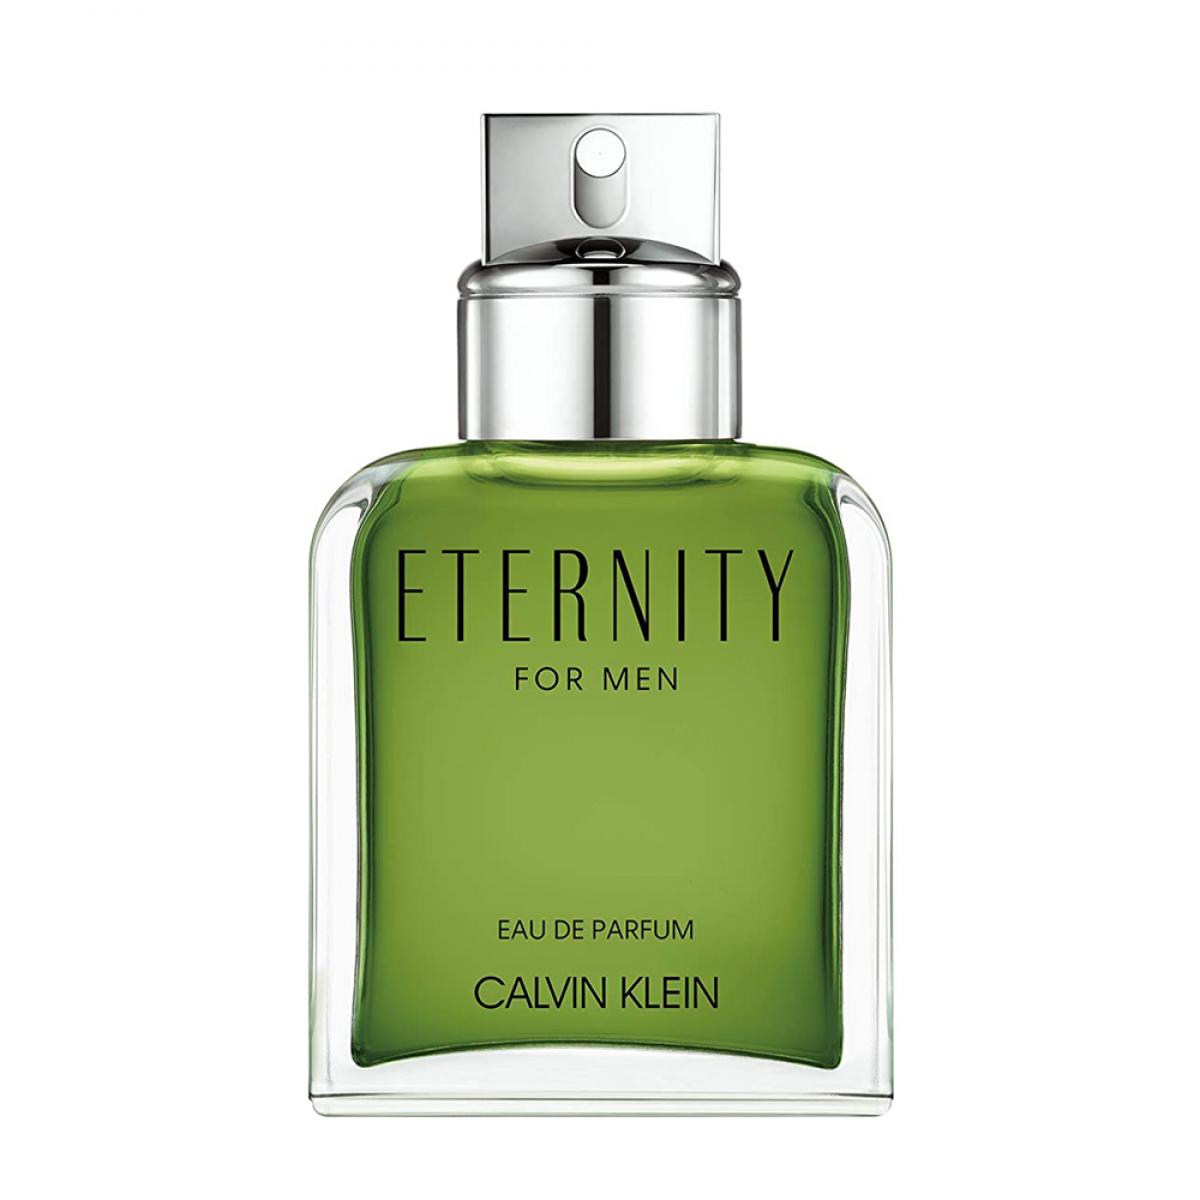 Eternity for Men Eau de Parfum